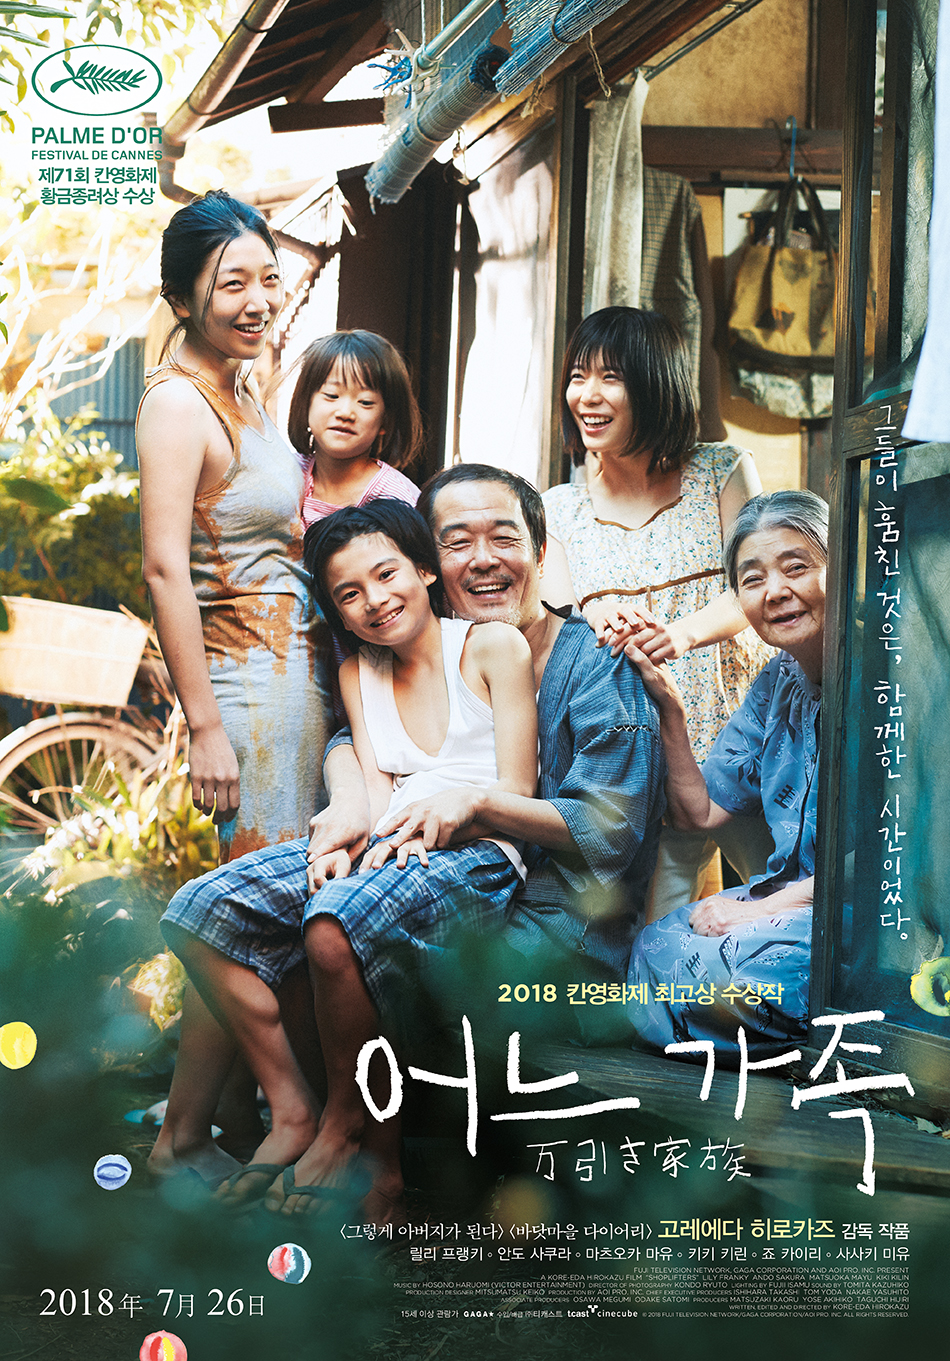 ‘어느 가족’ (2018, 고레에다 히로카즈 연출)